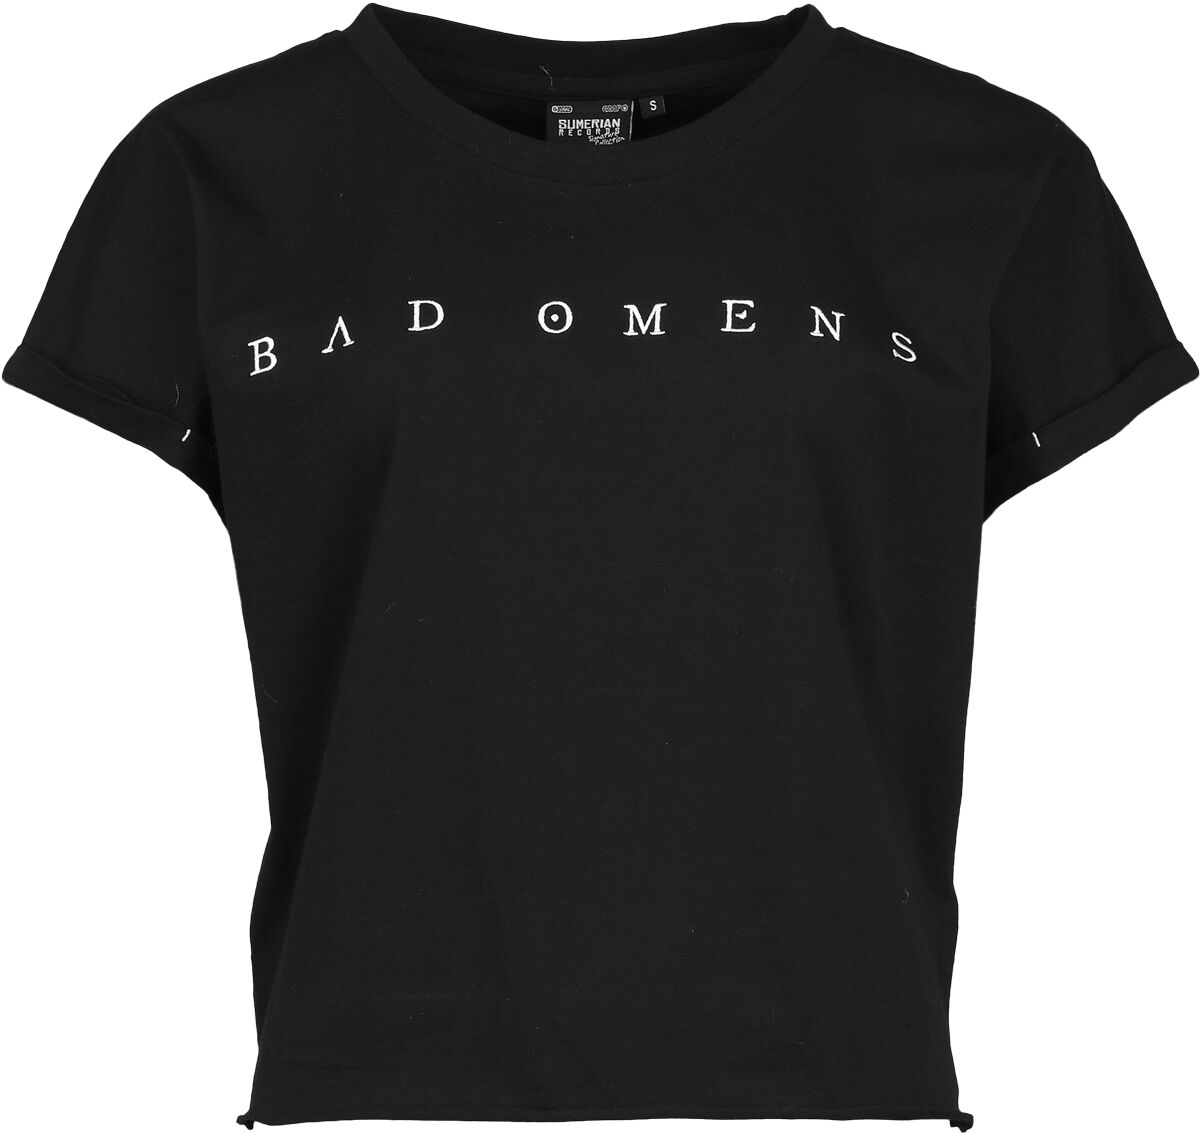 Bad Omens T-Shirt - EMP Signature Collection - S bis 3XL - für Damen - Größe 3XL - schwarz  - EMP exklusives Merchandise!